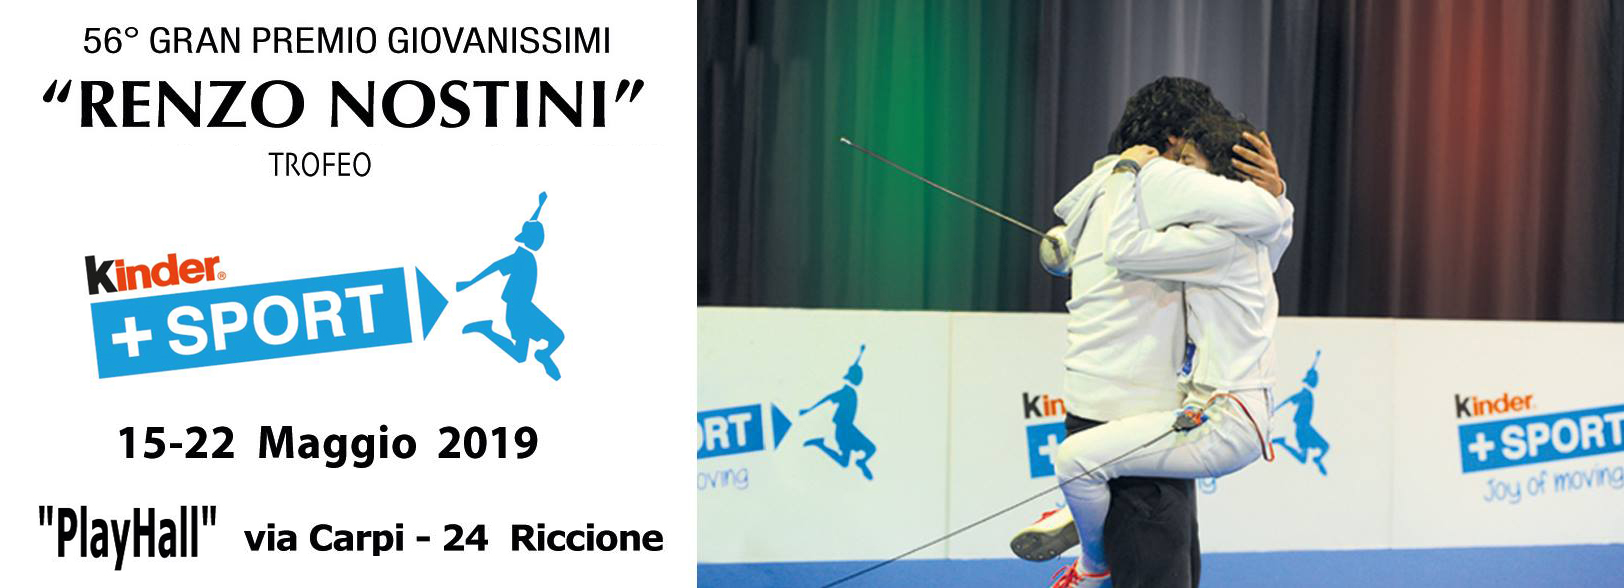 Scherma| Campionato Italiano under 14 a Riccione, folta rappresentanza sannita